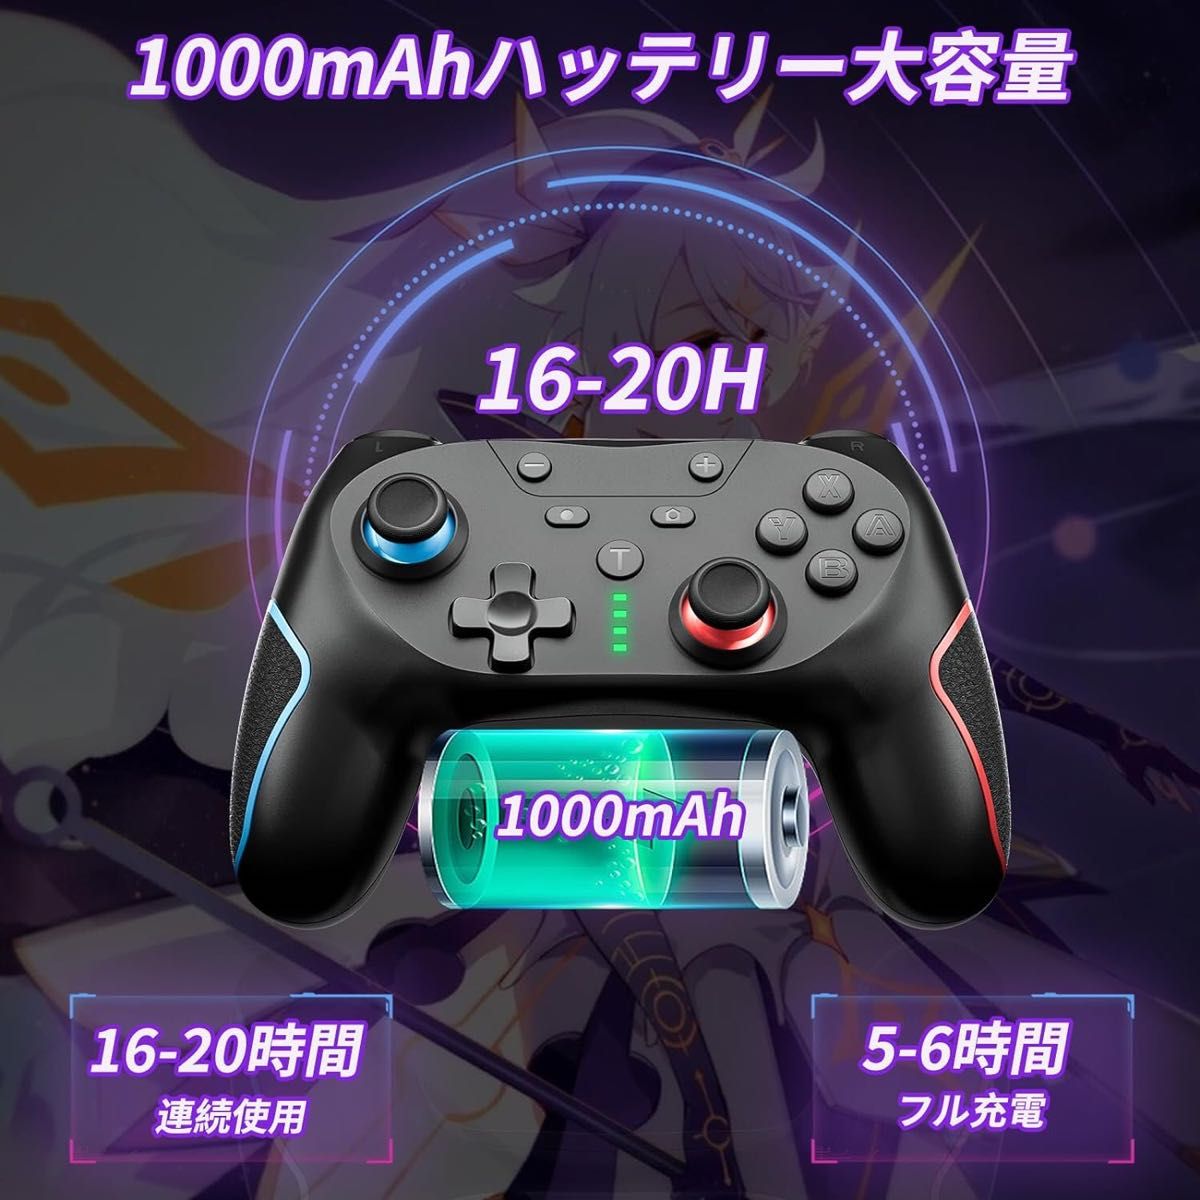 【本日限定価格】 Nintendo Switch 用 コントローラー 1000mAh大容量 Bluetooth 無線 2個セット